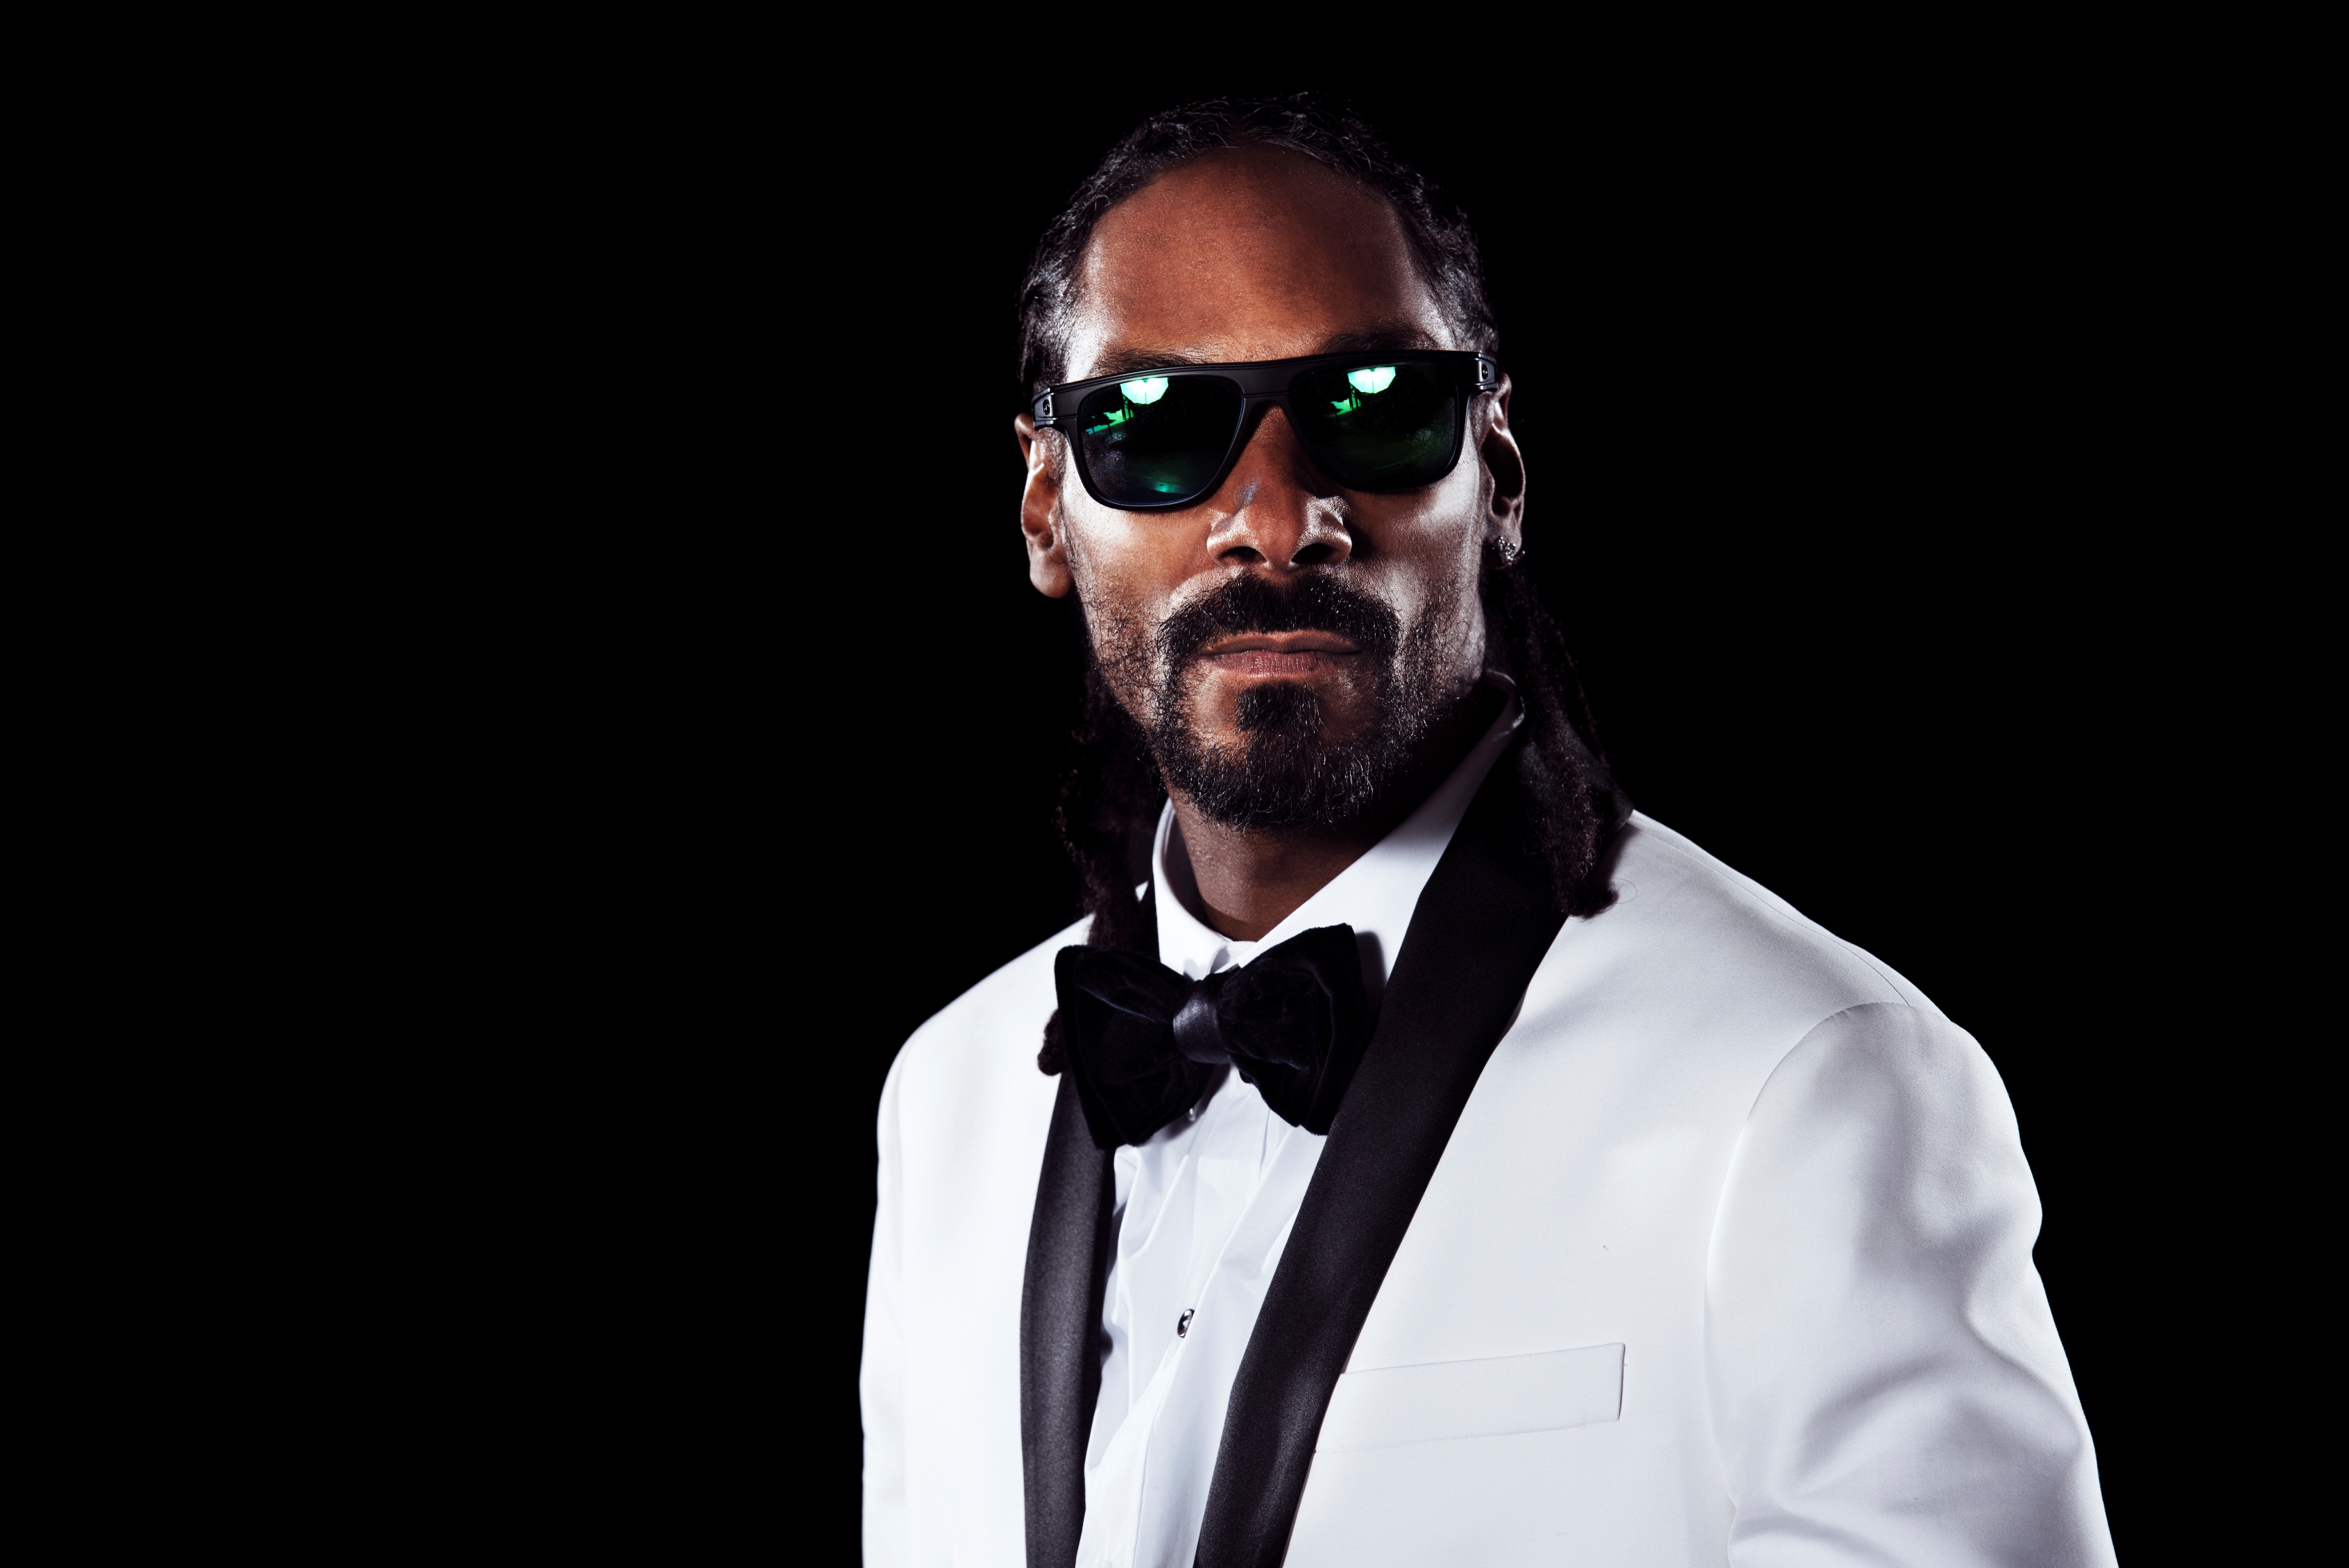  Domani Snoop Dogg in concerto a Napoli:  una maratona hip hop senza precedenti